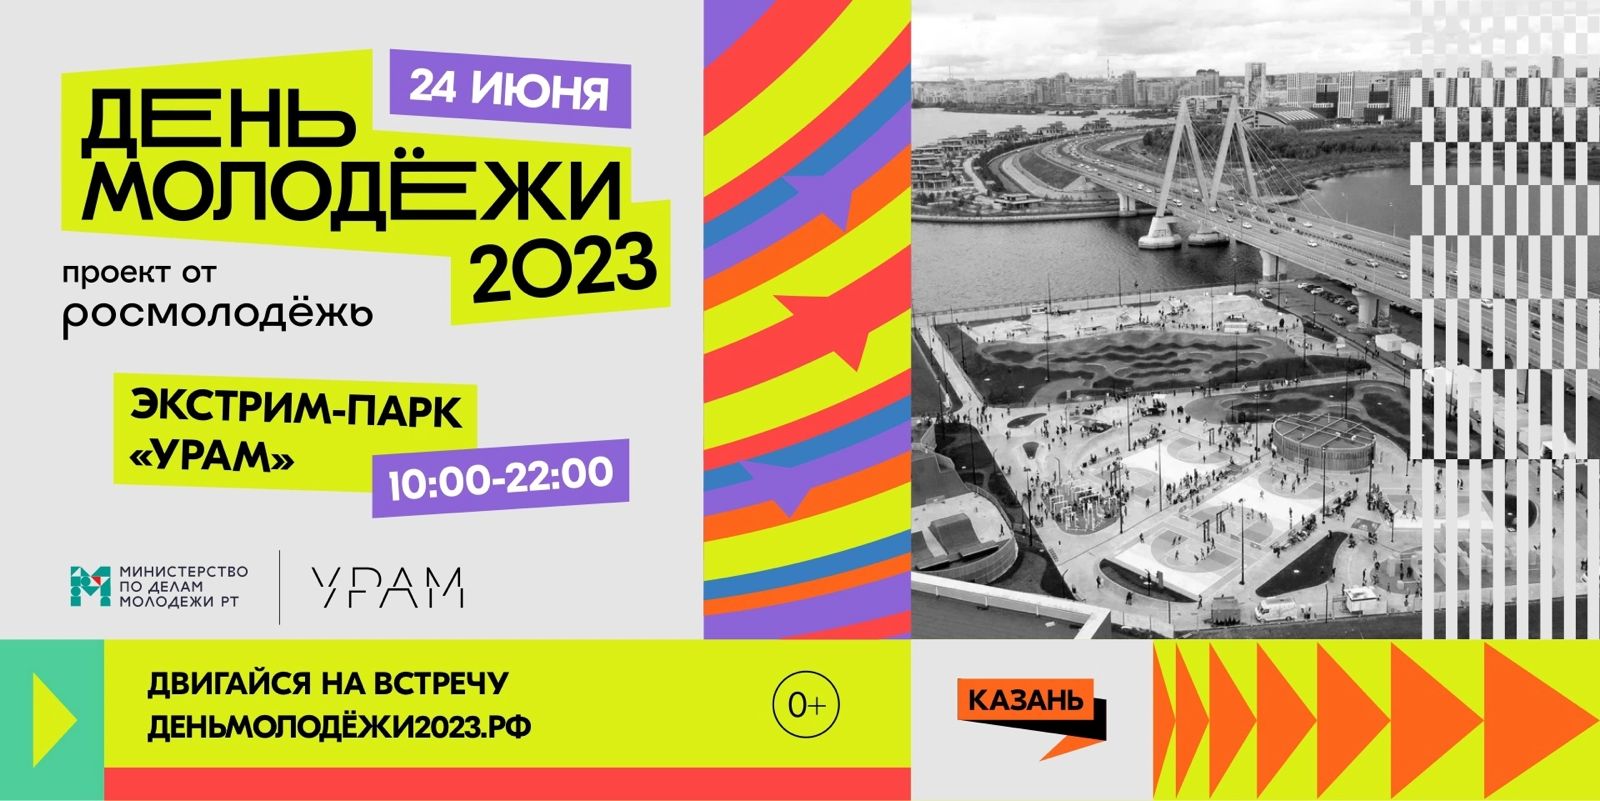 В День молодежи в Казани в экстрим-парке «УРАМ» пройдет 24 июня